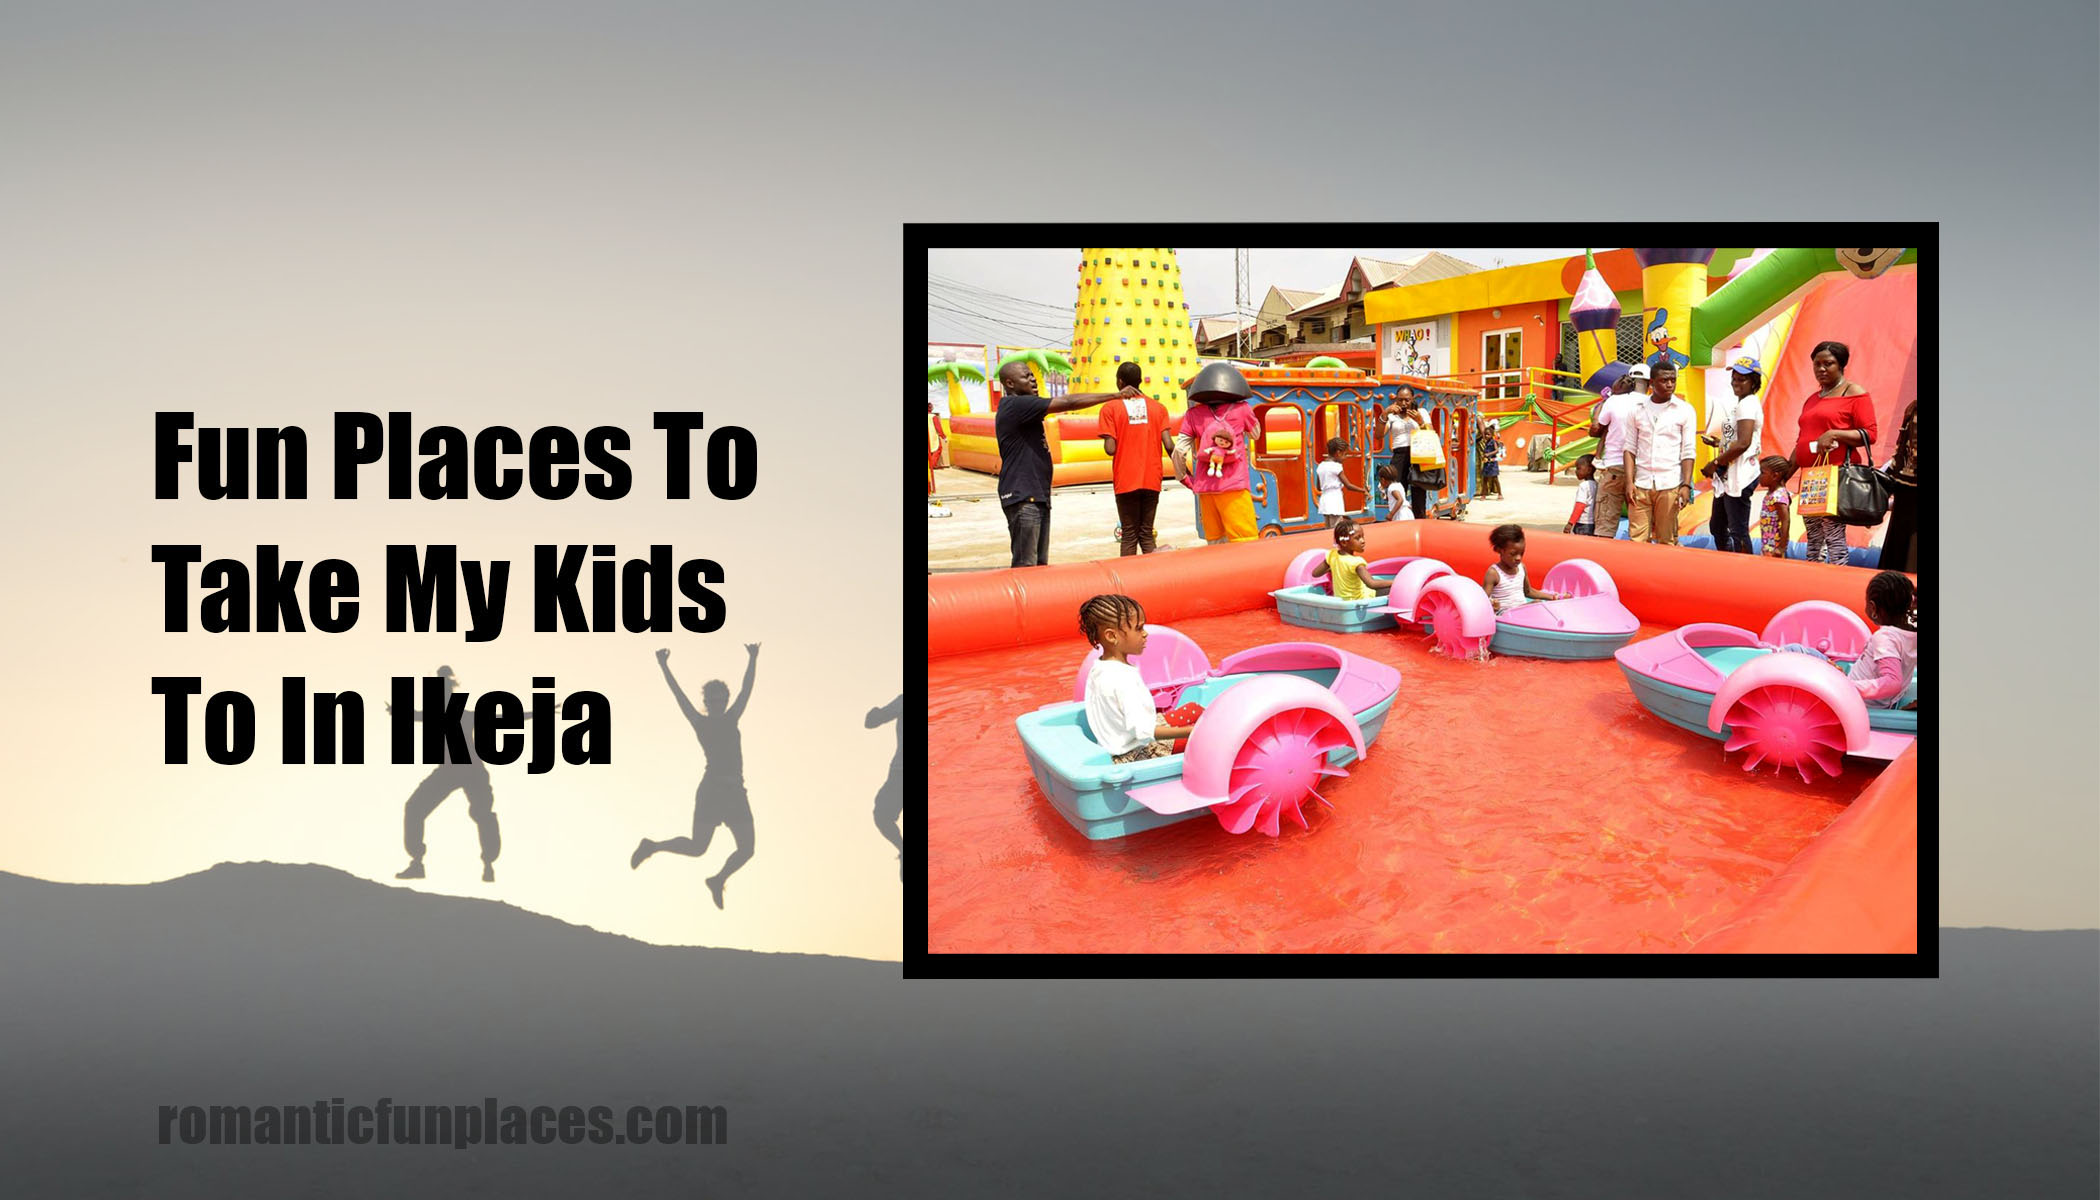 Fun Places To Take My Kids To In Ikeja